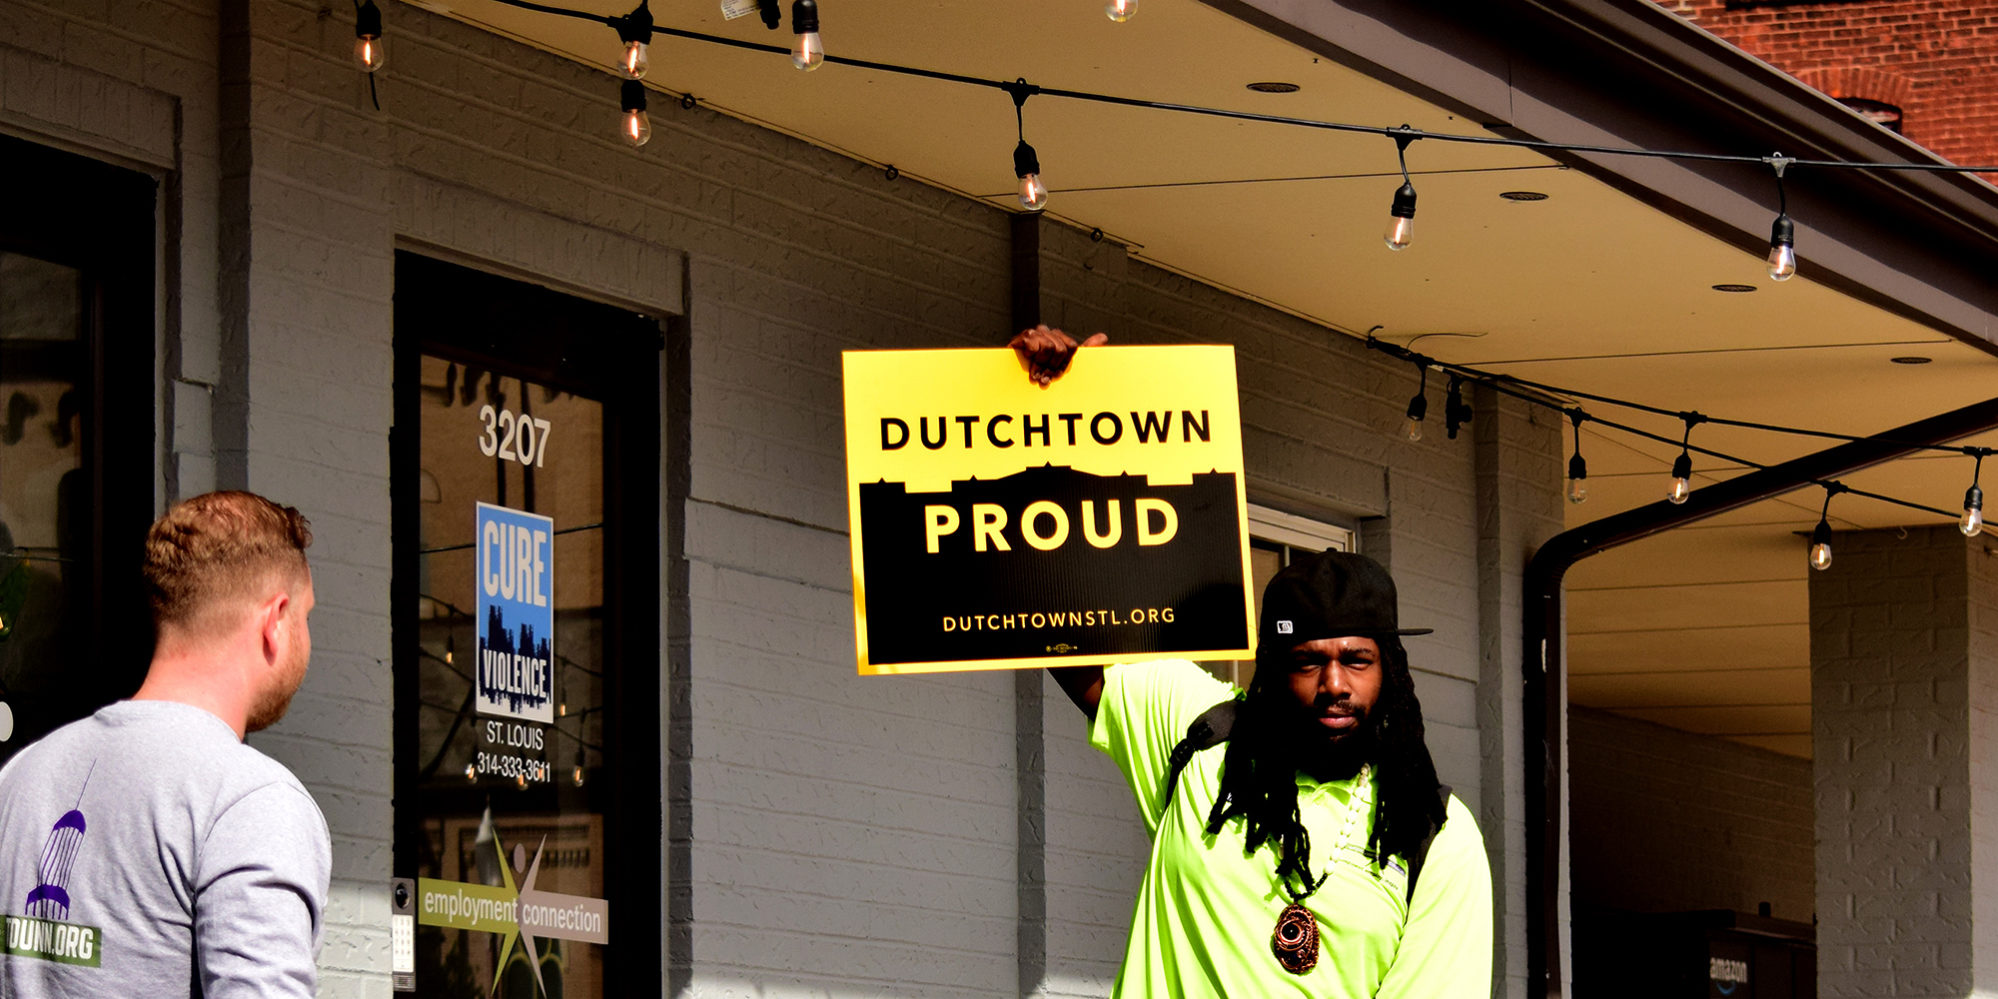 Deriska Dutchtown wuxuu hayaa calaamada Dutchtown Proud horteeda Xarunta Innovation Neighborhood ee Downtown Dutchtown, St. Louis, MO.